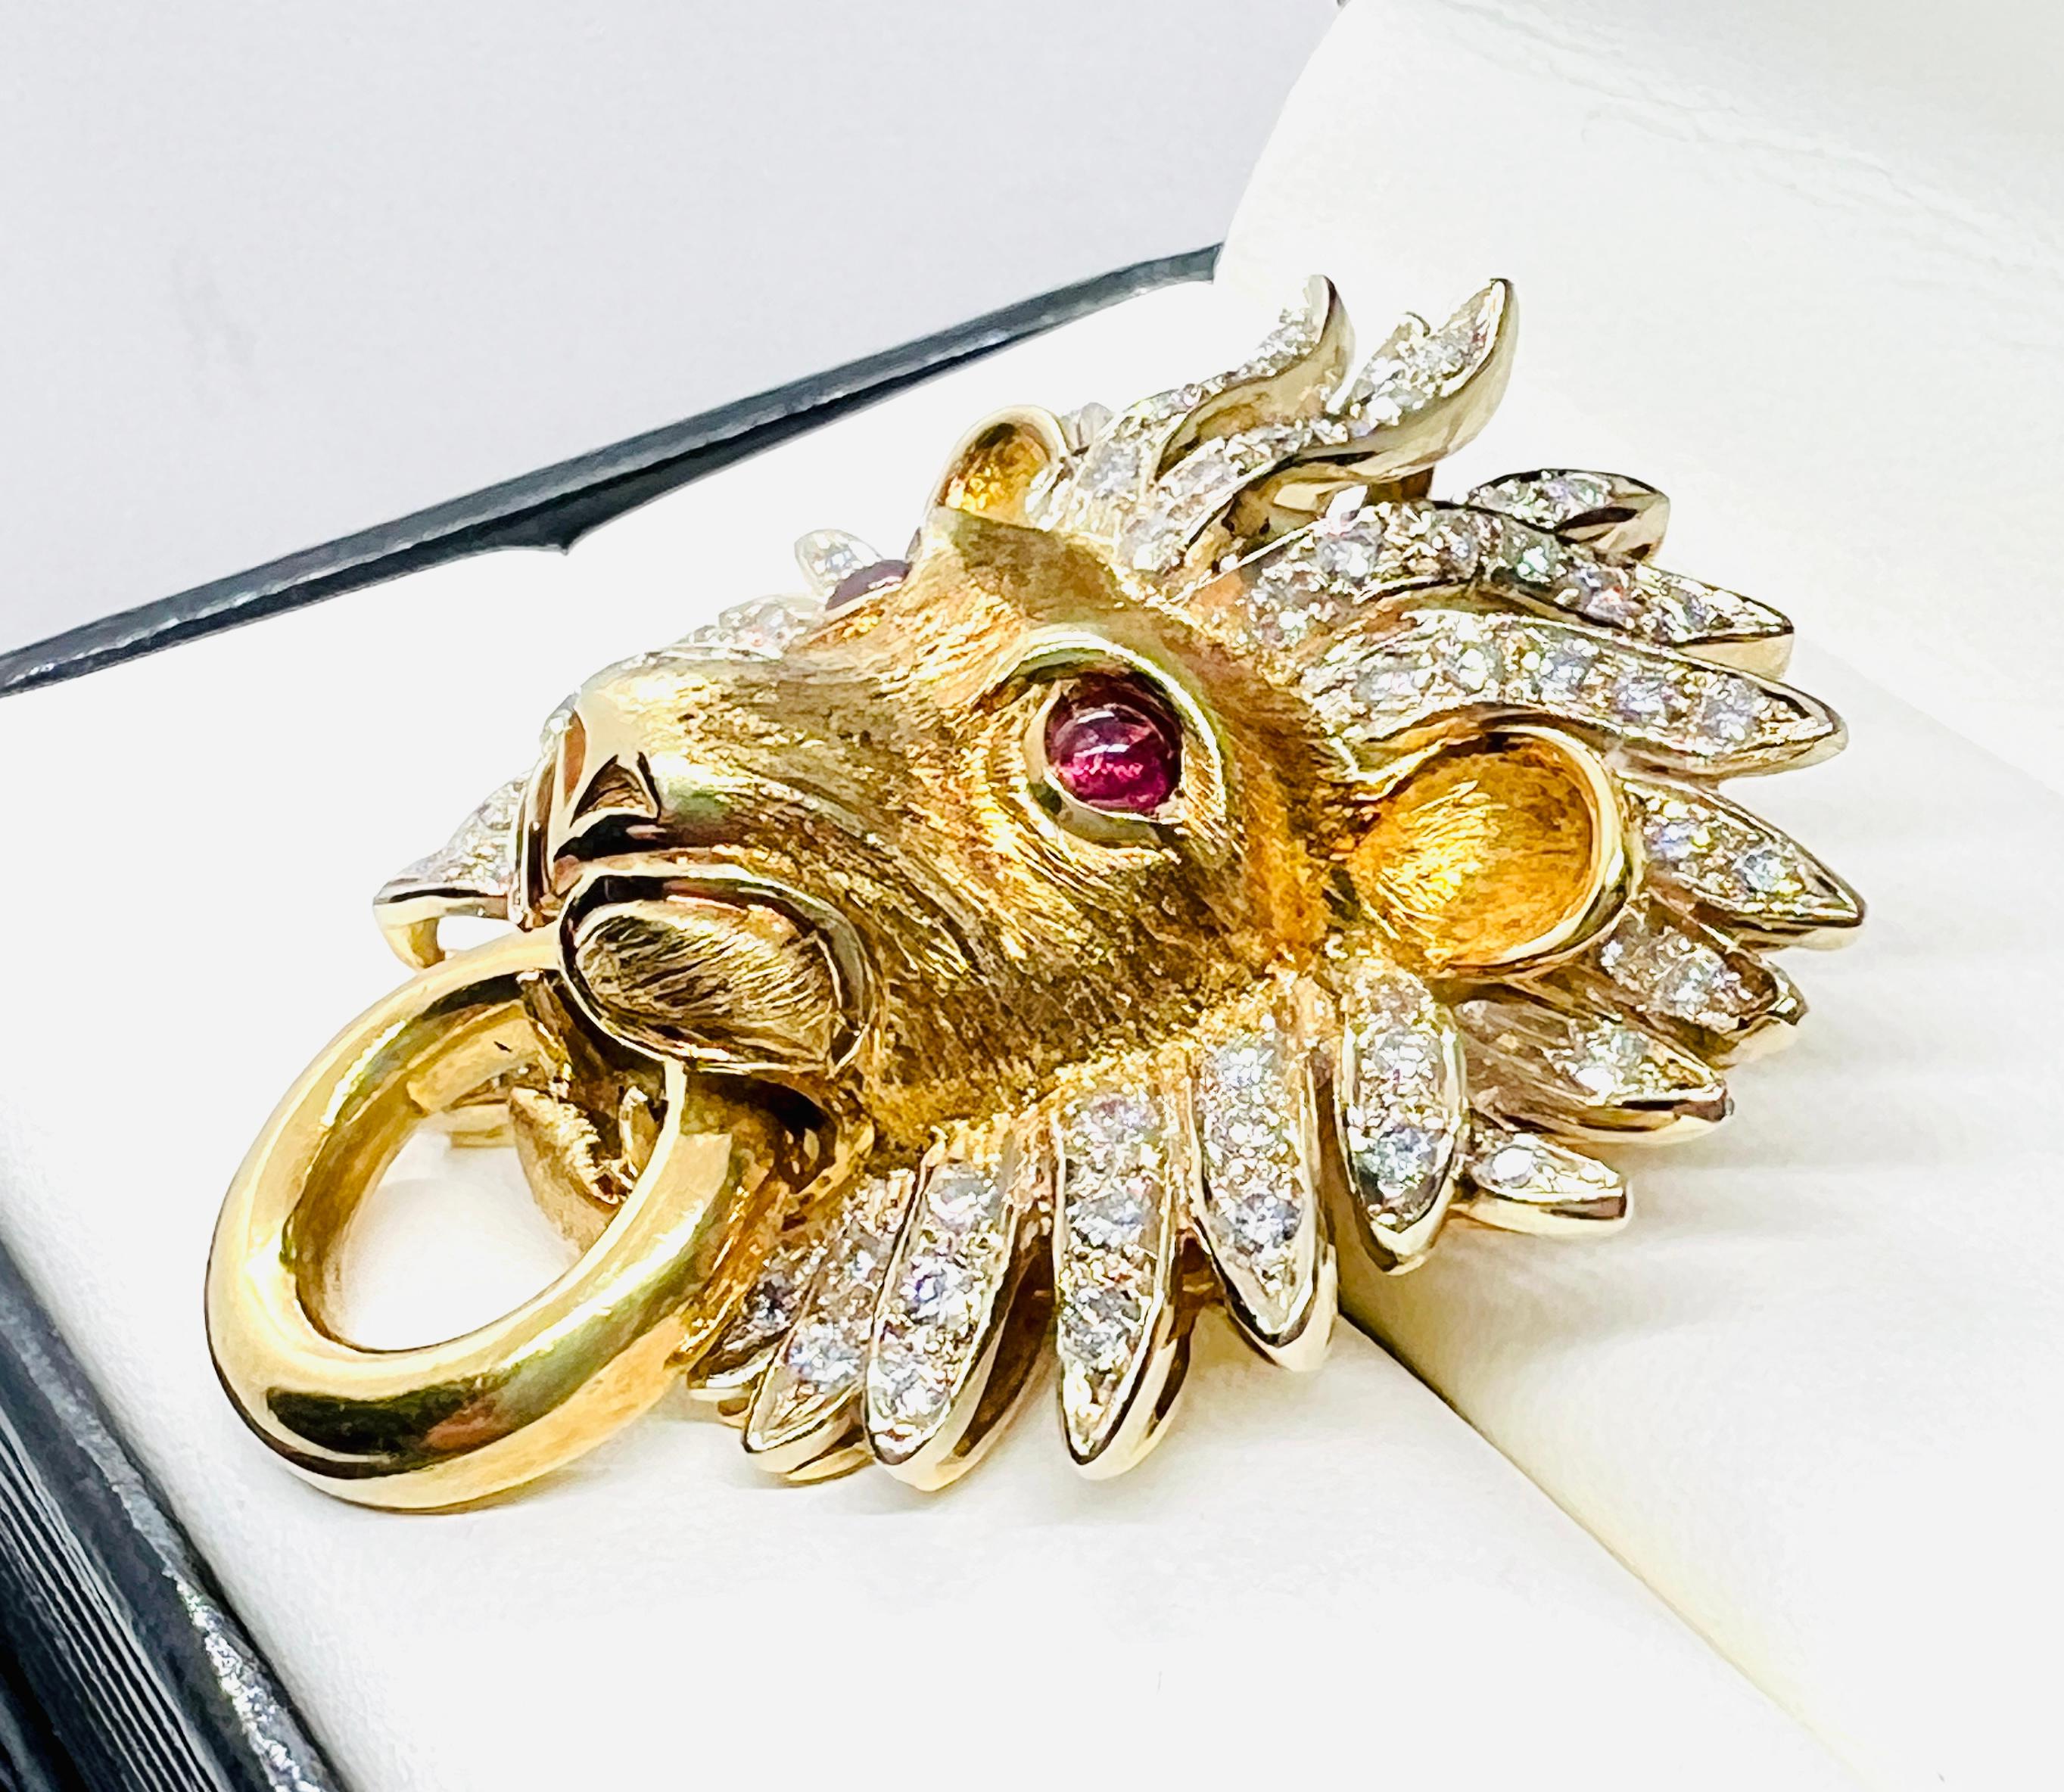 Art Deco Adler 18k Yellow Gold, Diamond & Ruby Lionshead Doorknocker Enhancer Pendant For Sale